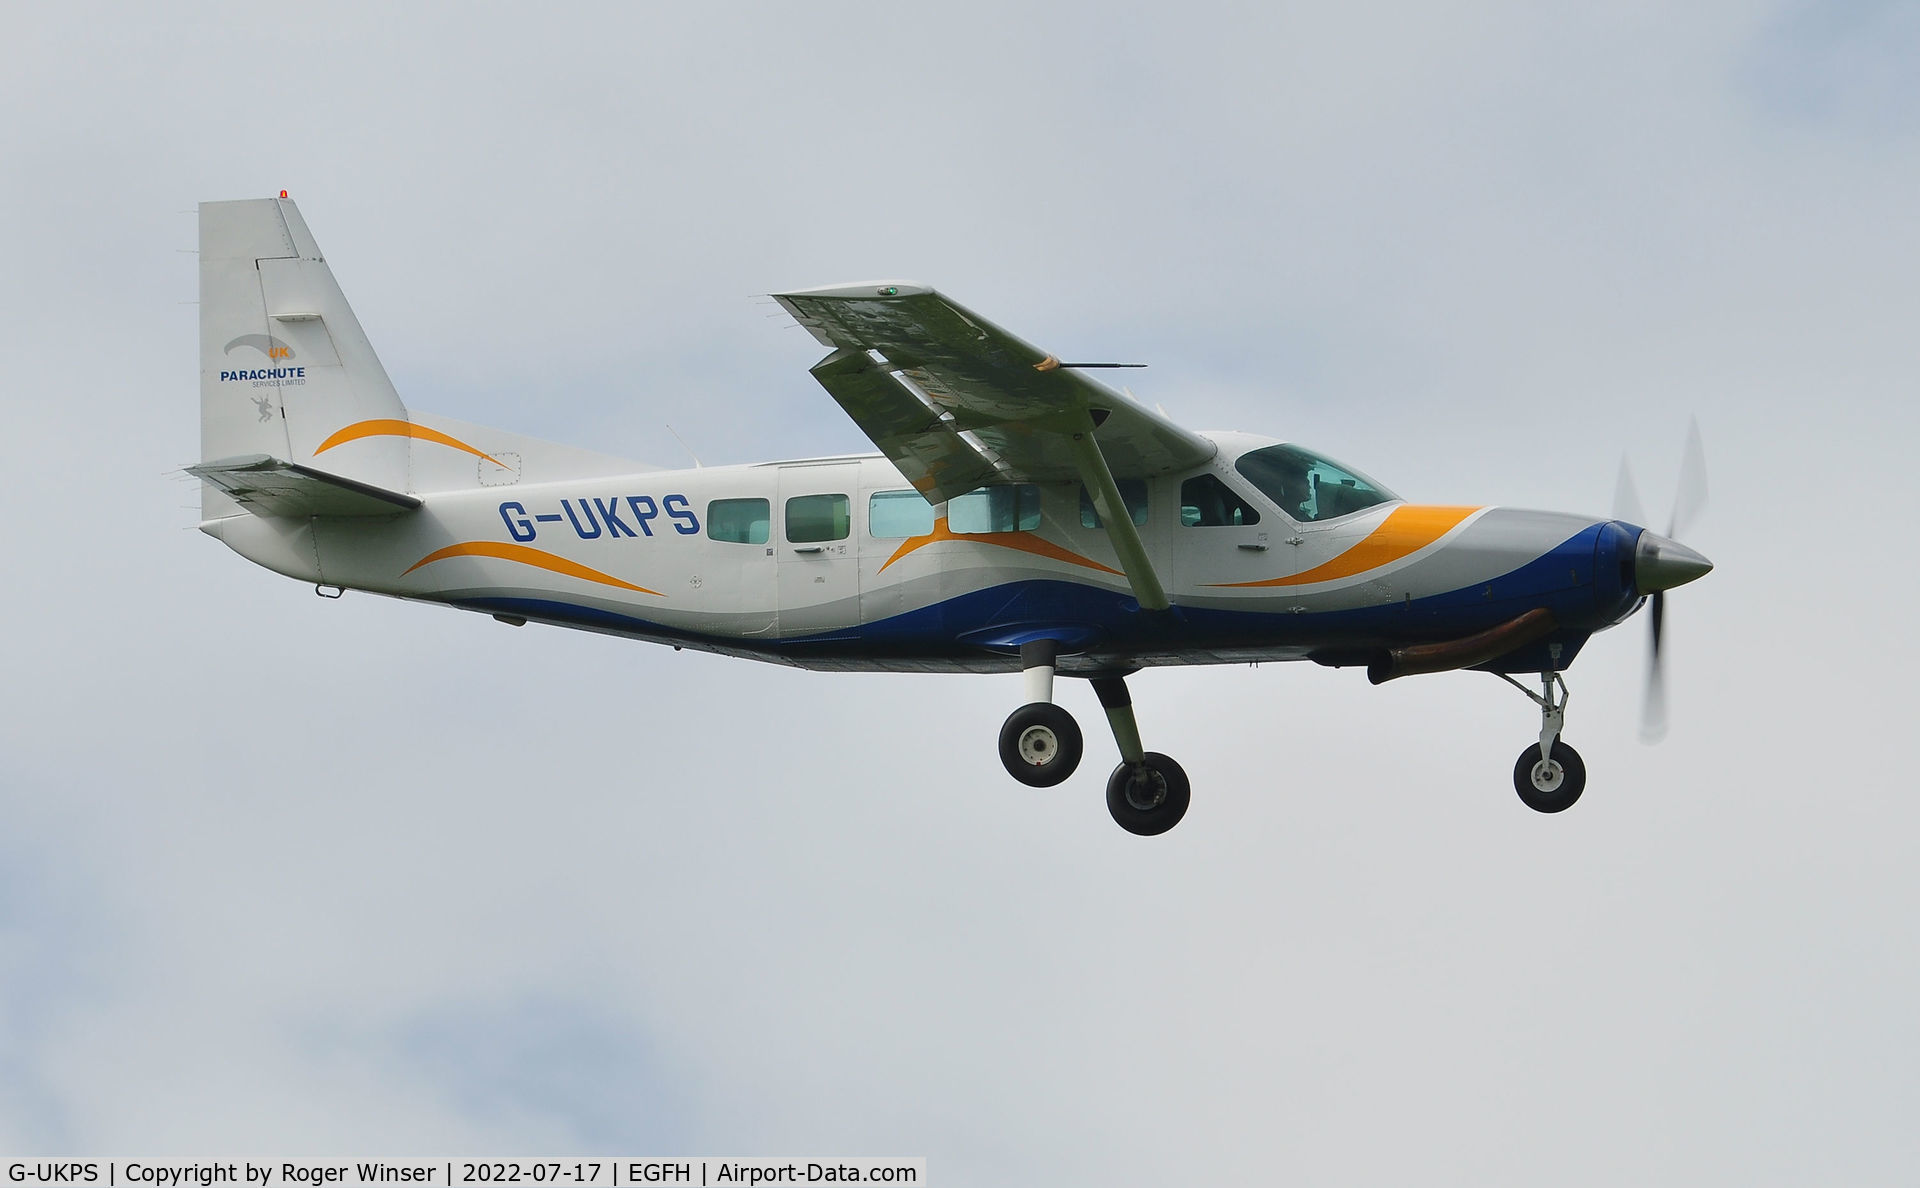 G-UKPS, 2007 Cessna 208 Caravan 1 C/N 20800423, Resident Cessna Caravan 1 finals to land Runway 10..